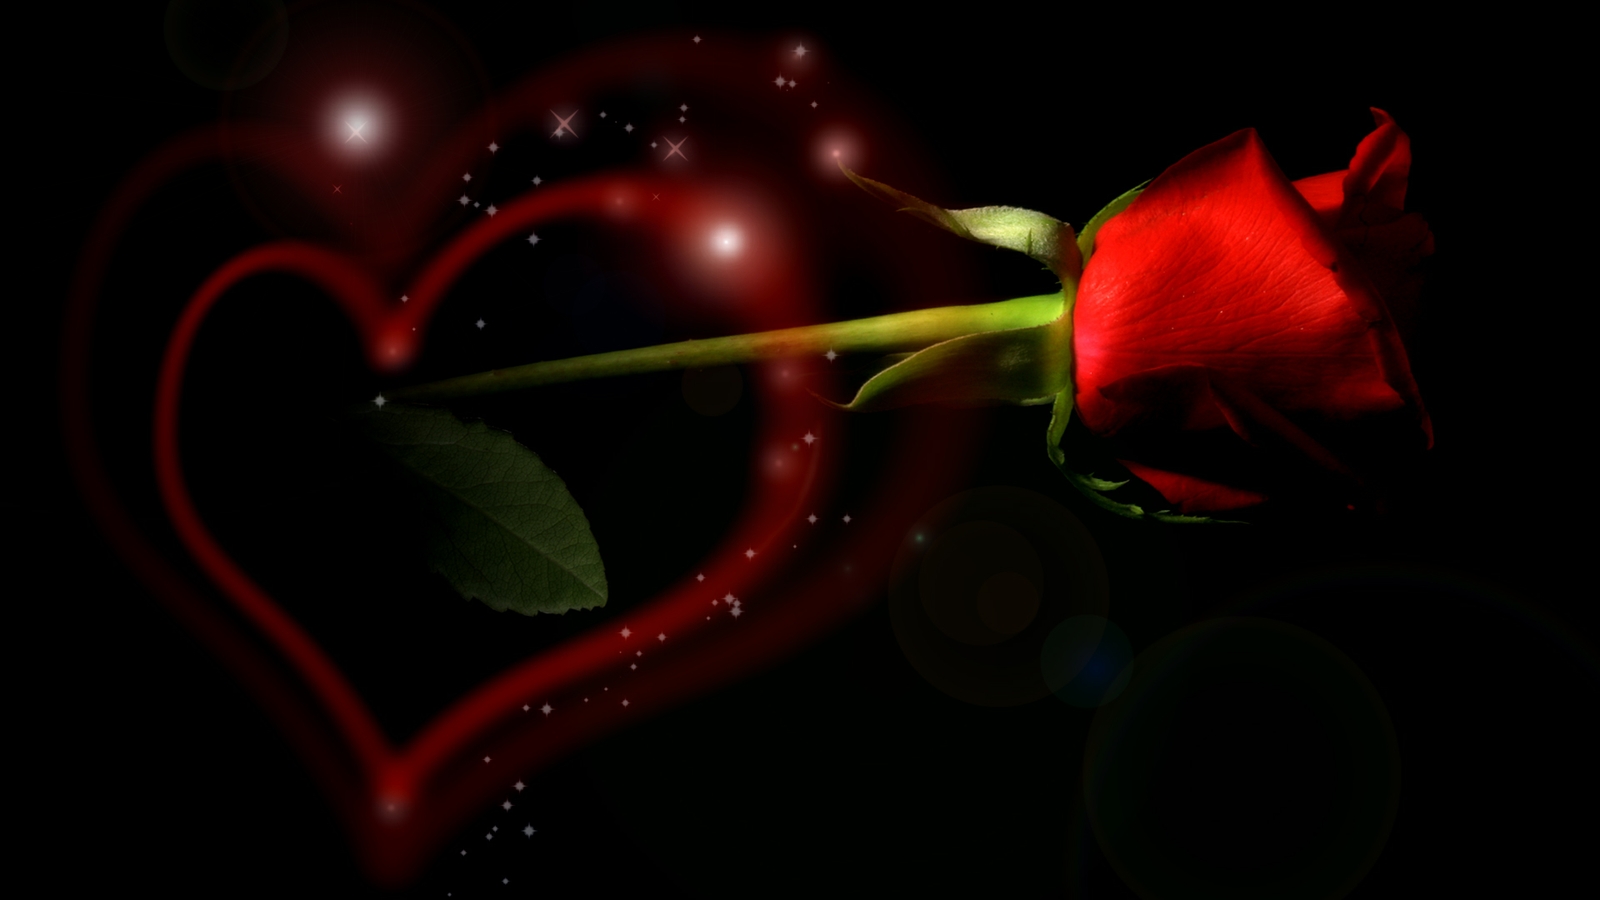 nuovo sfondo d'amore,rosso,macrofotografia,nero,cuore,san valentino